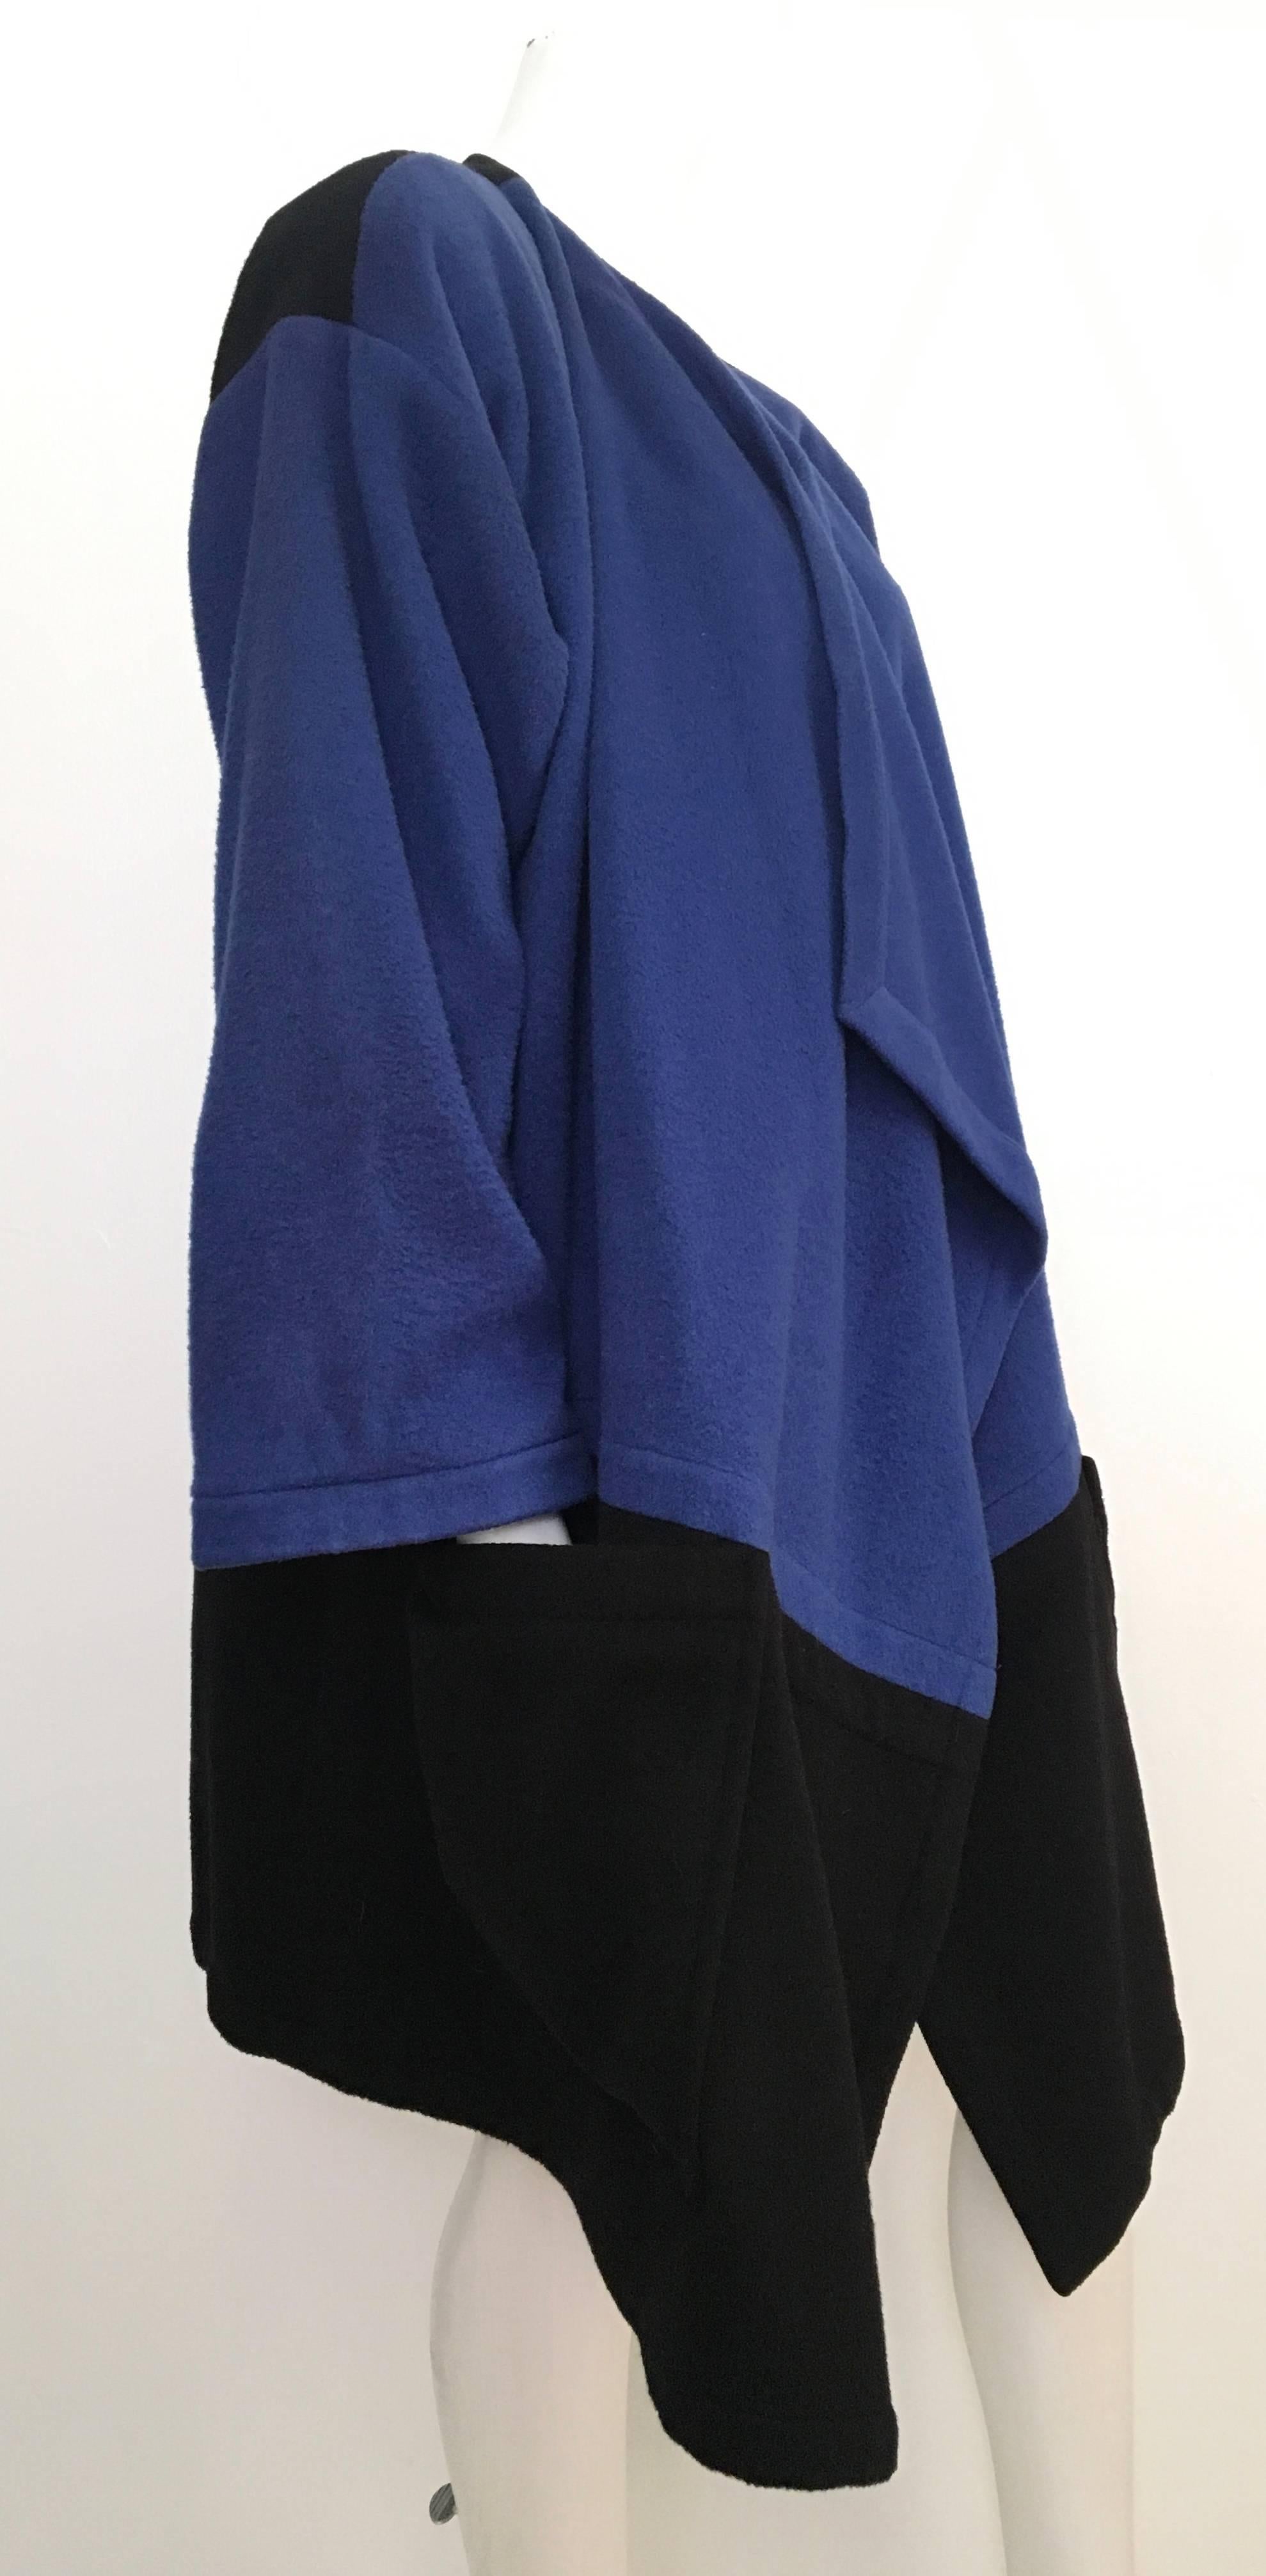 Women's or Men's Patrick Kelly Paris Cashmere Coat Size 8 / 10 